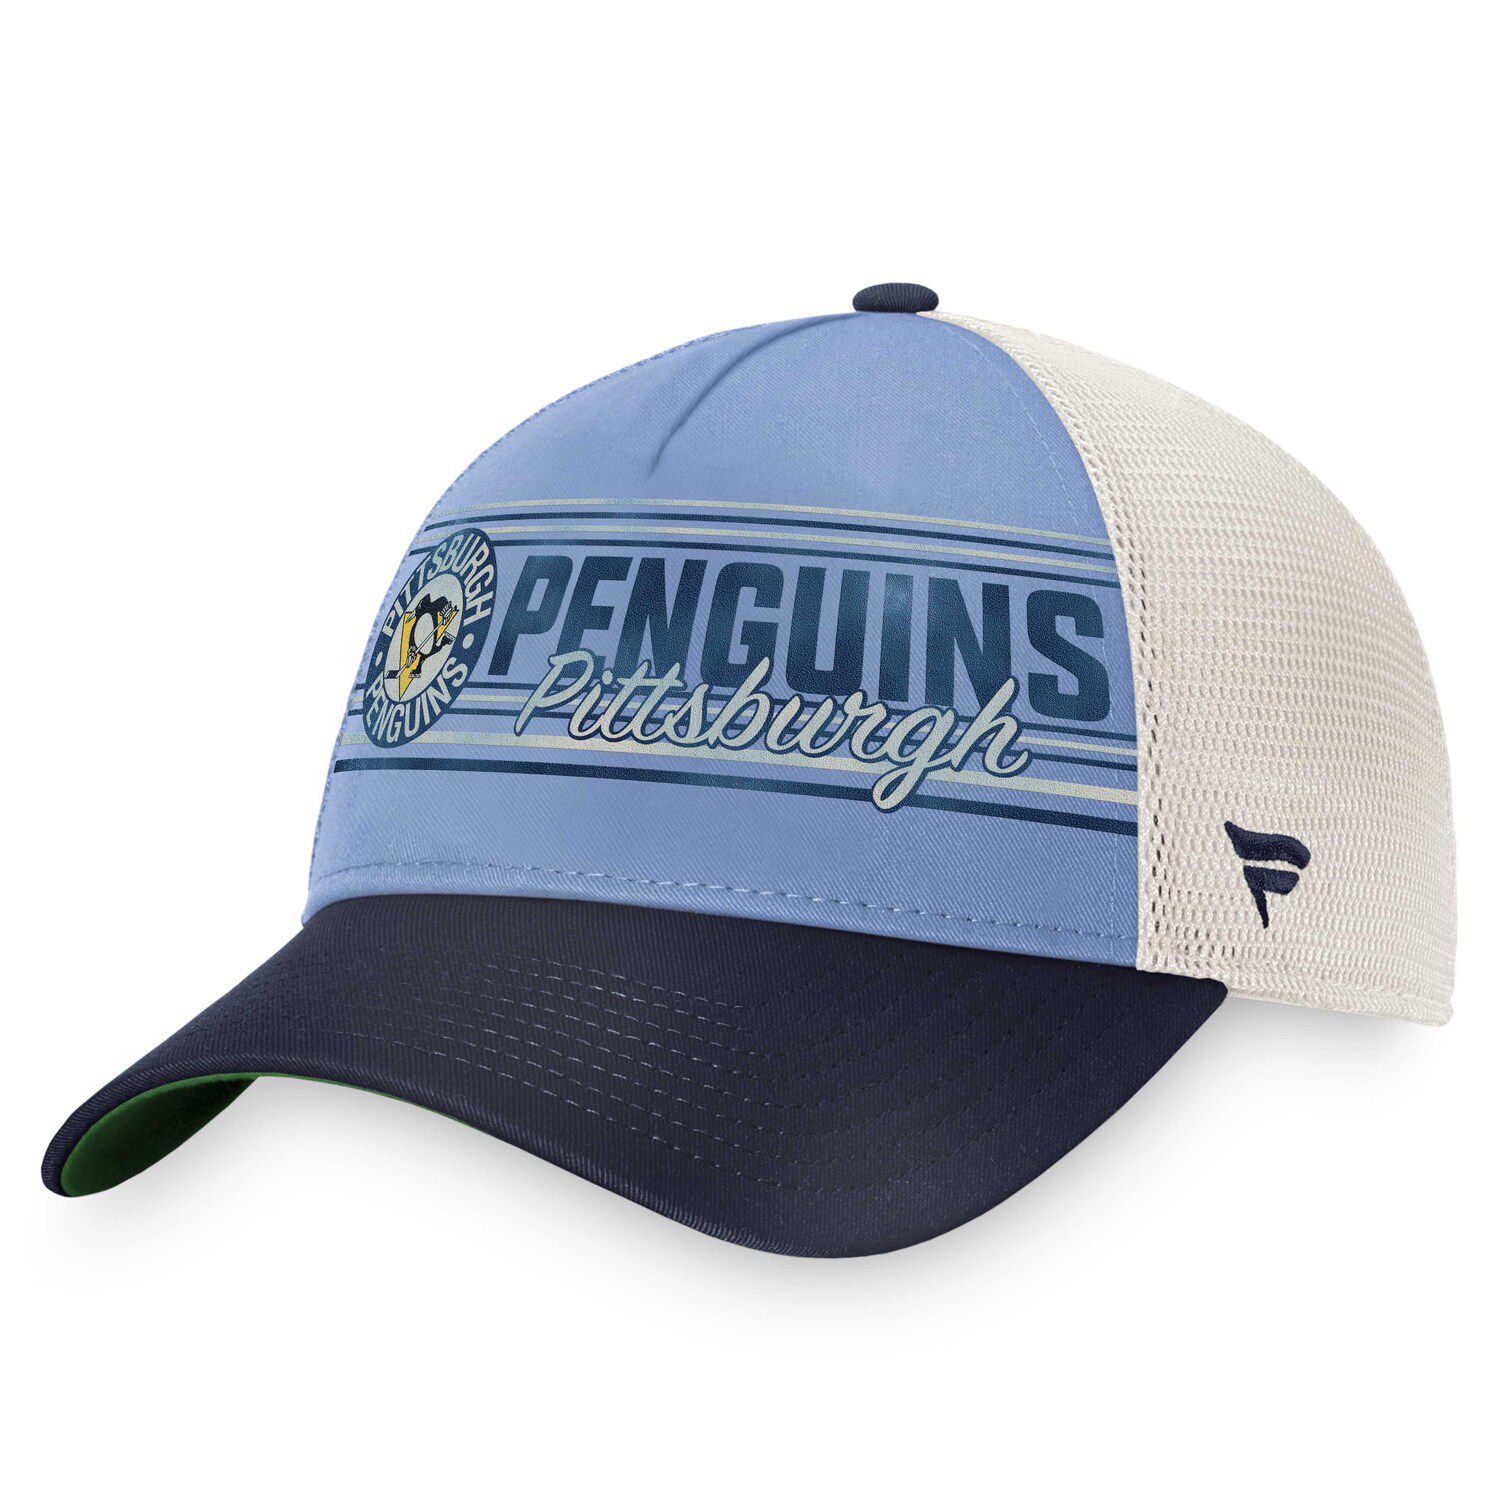 Men's adidas Black/White Pittsburgh Penguins Foam Trucker Snapback Hat